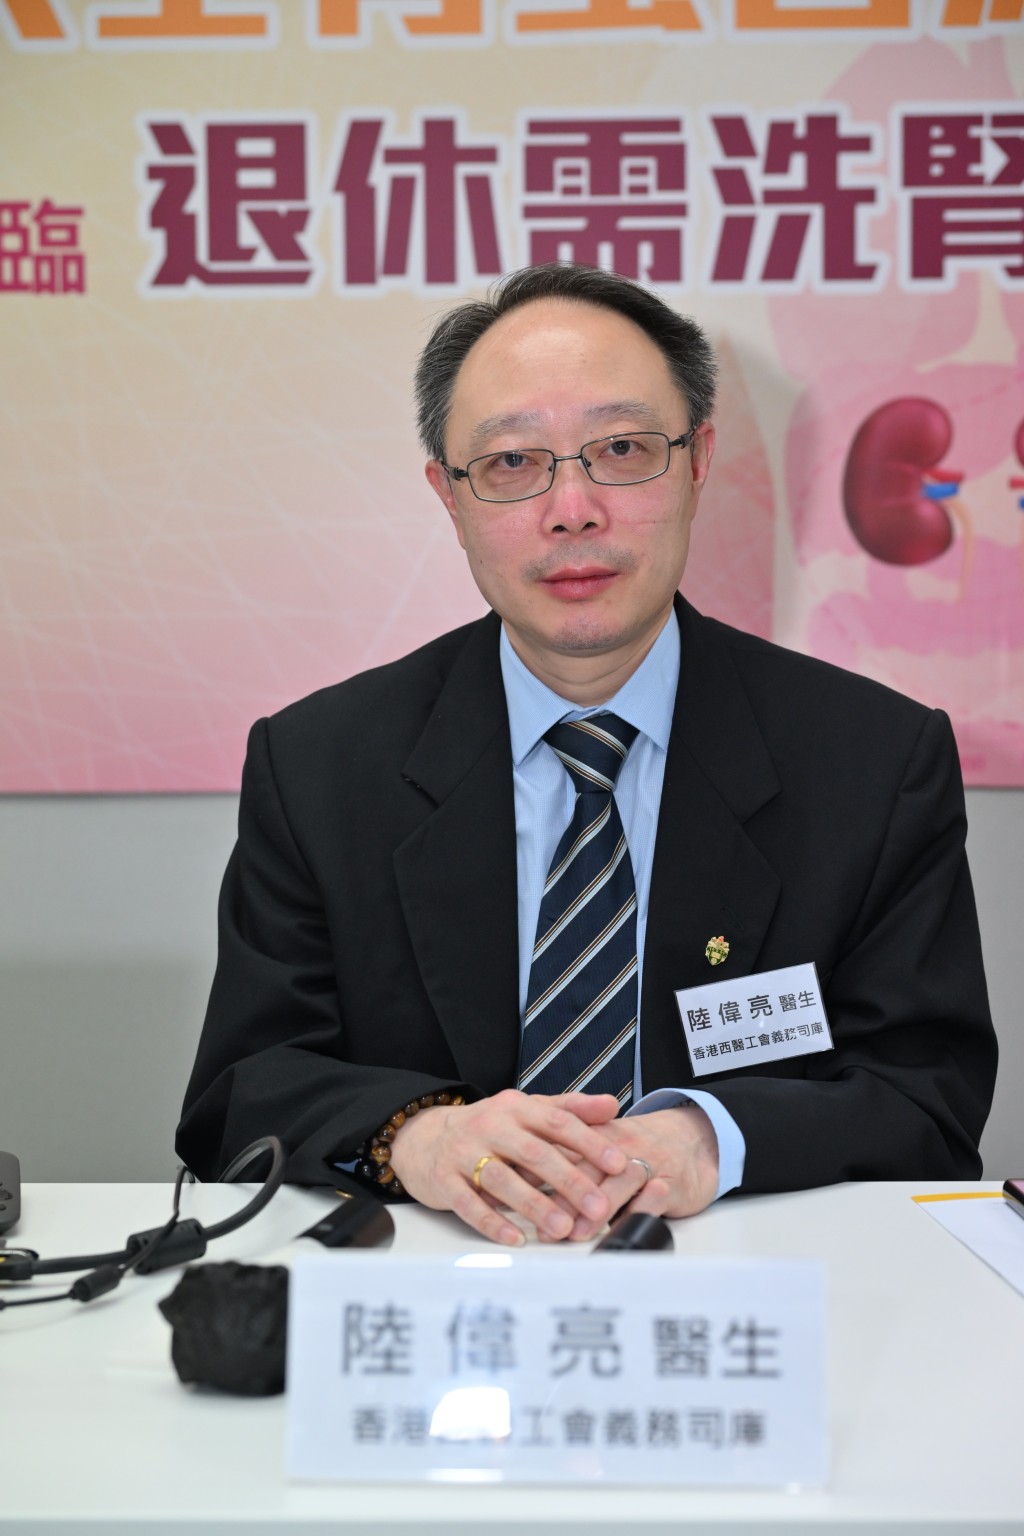 西医工会义务司库陆伟亮指高危人士对慢性肾病认知不足，应加强公众教育。